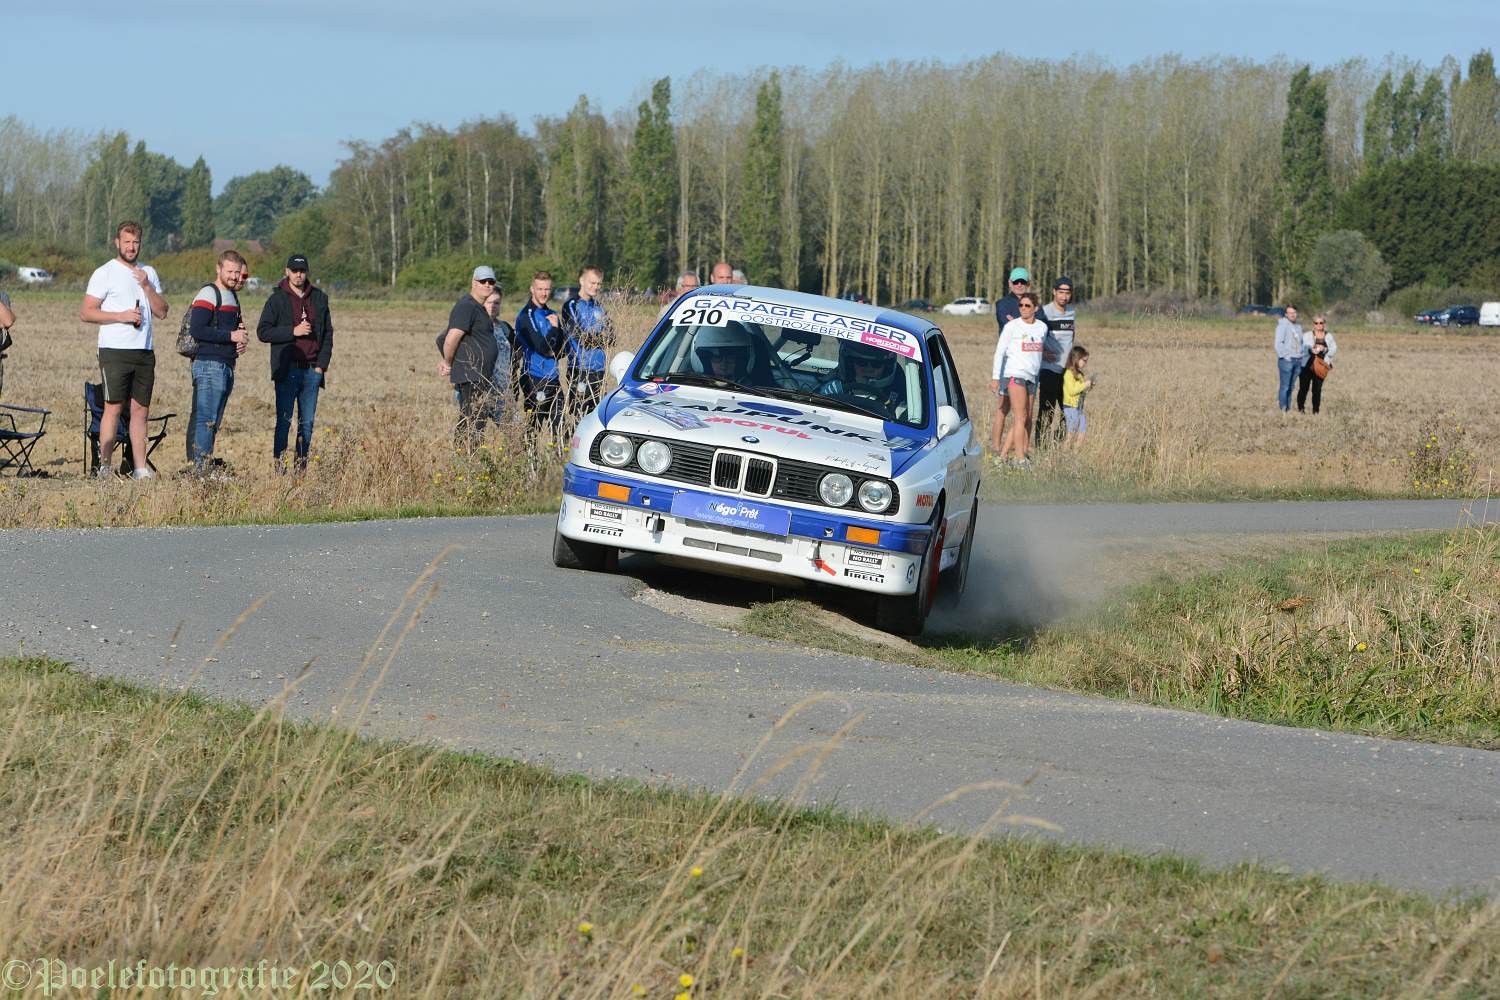 Foto-album Rallye du Béthunois door Geert Evenepoel is toegevoegd.